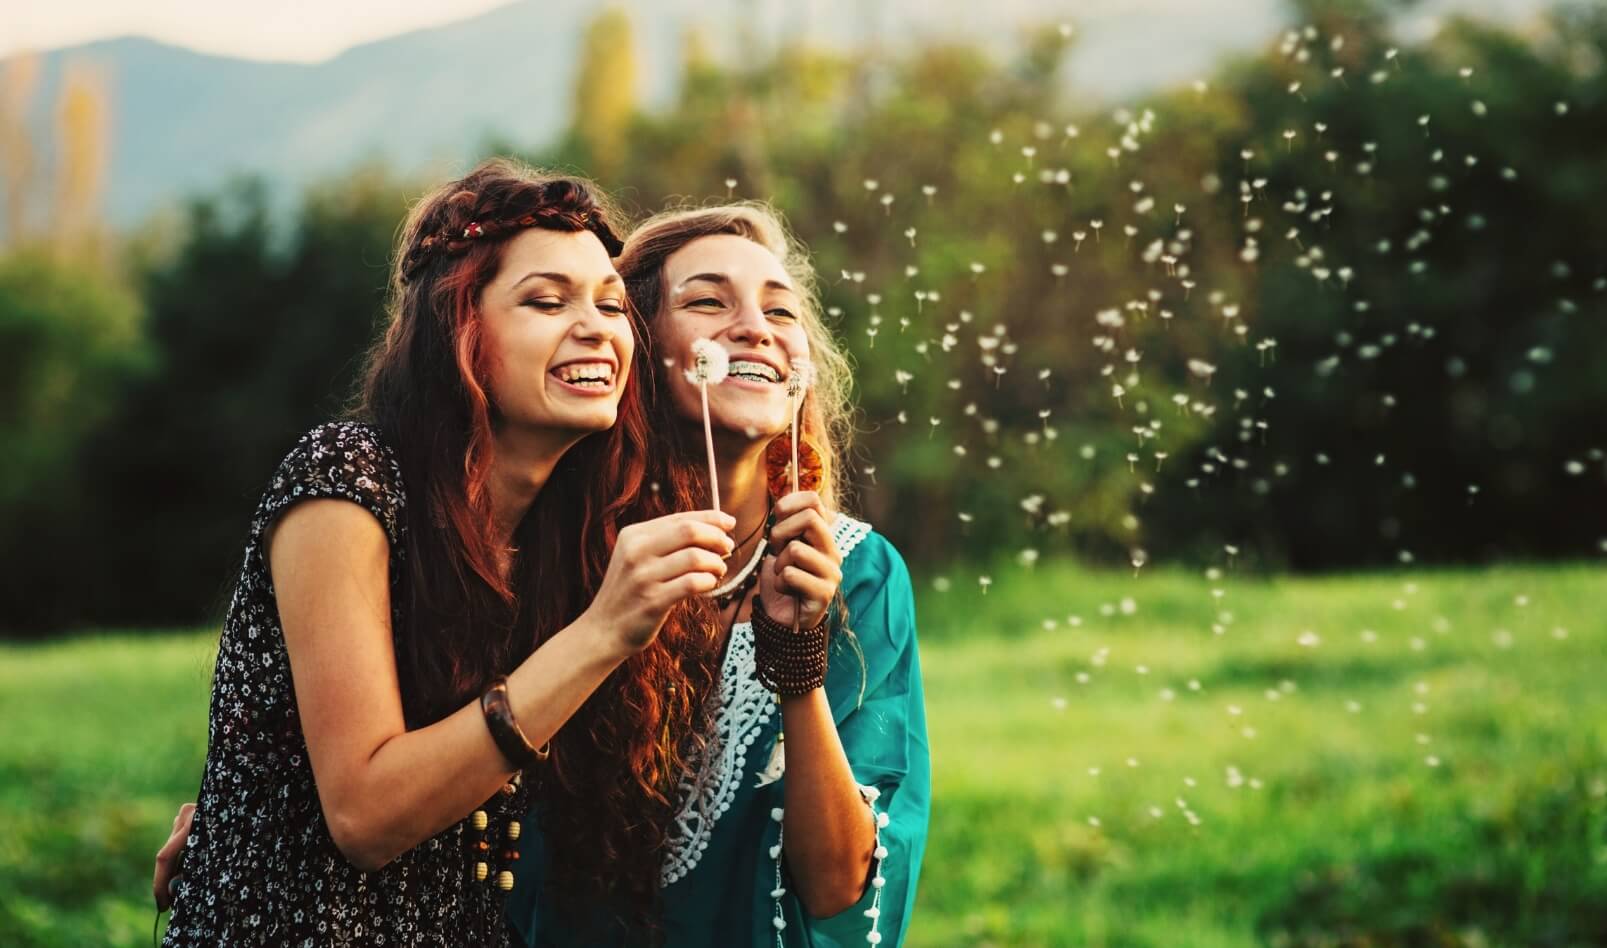 Two girls in a field releasing dandelion seeds from a dandelion flower.